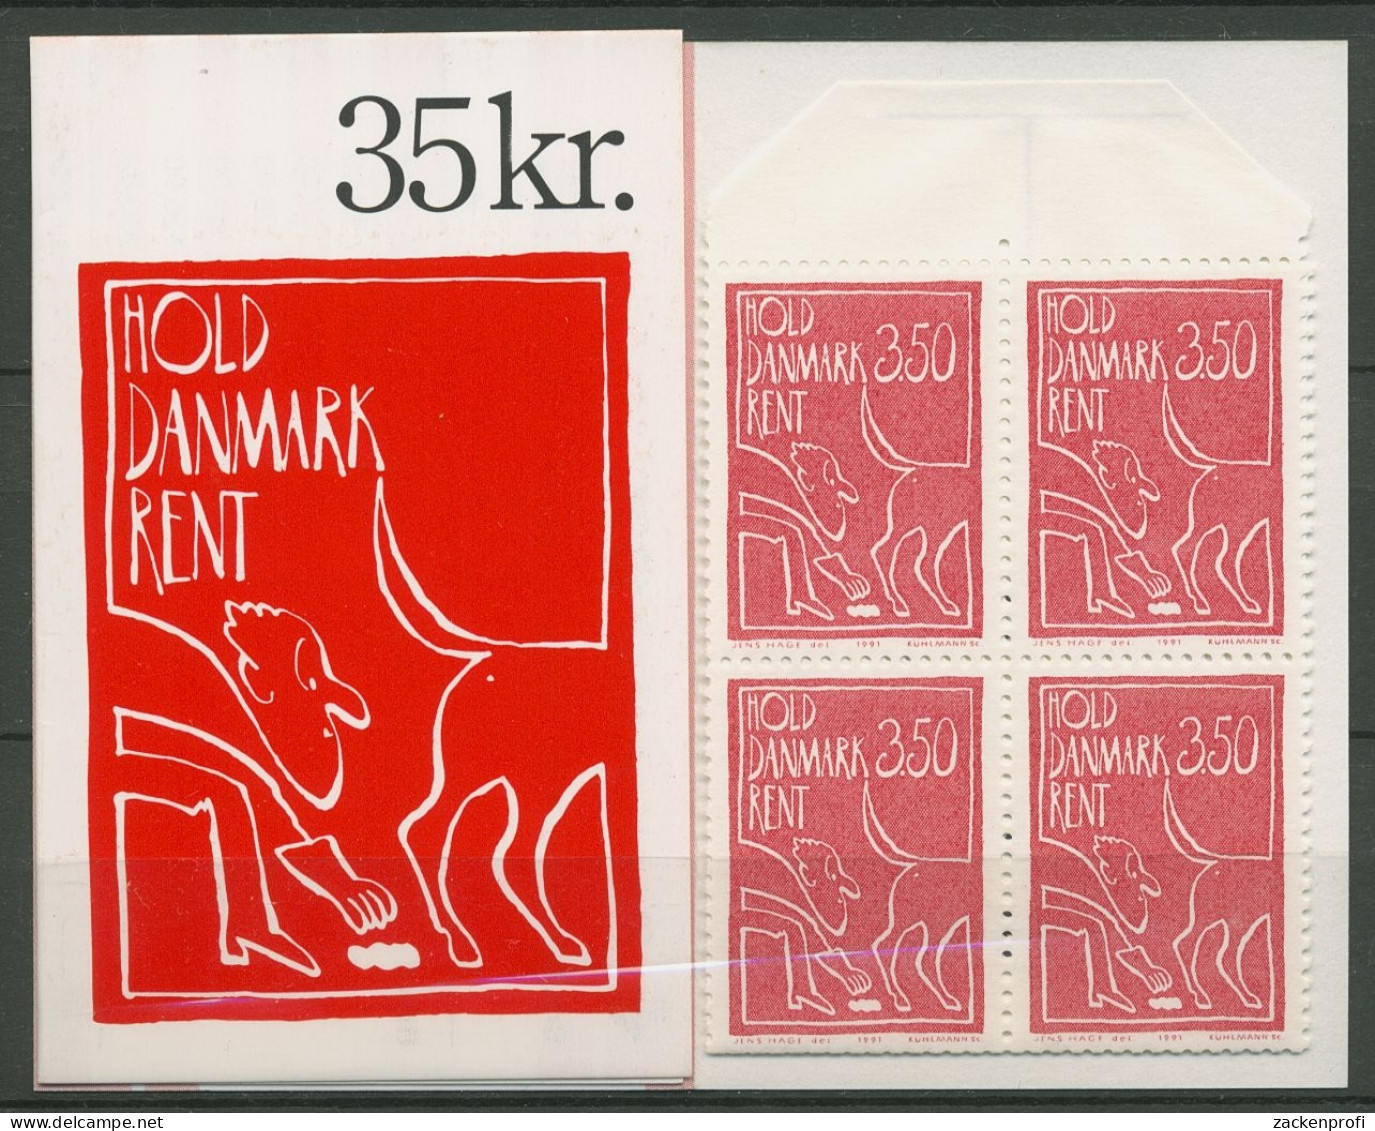 Dänemark 1991 Sauberes Dänemark Markenheftchen 1010 MH Postfrisch (C93041) - Markenheftchen